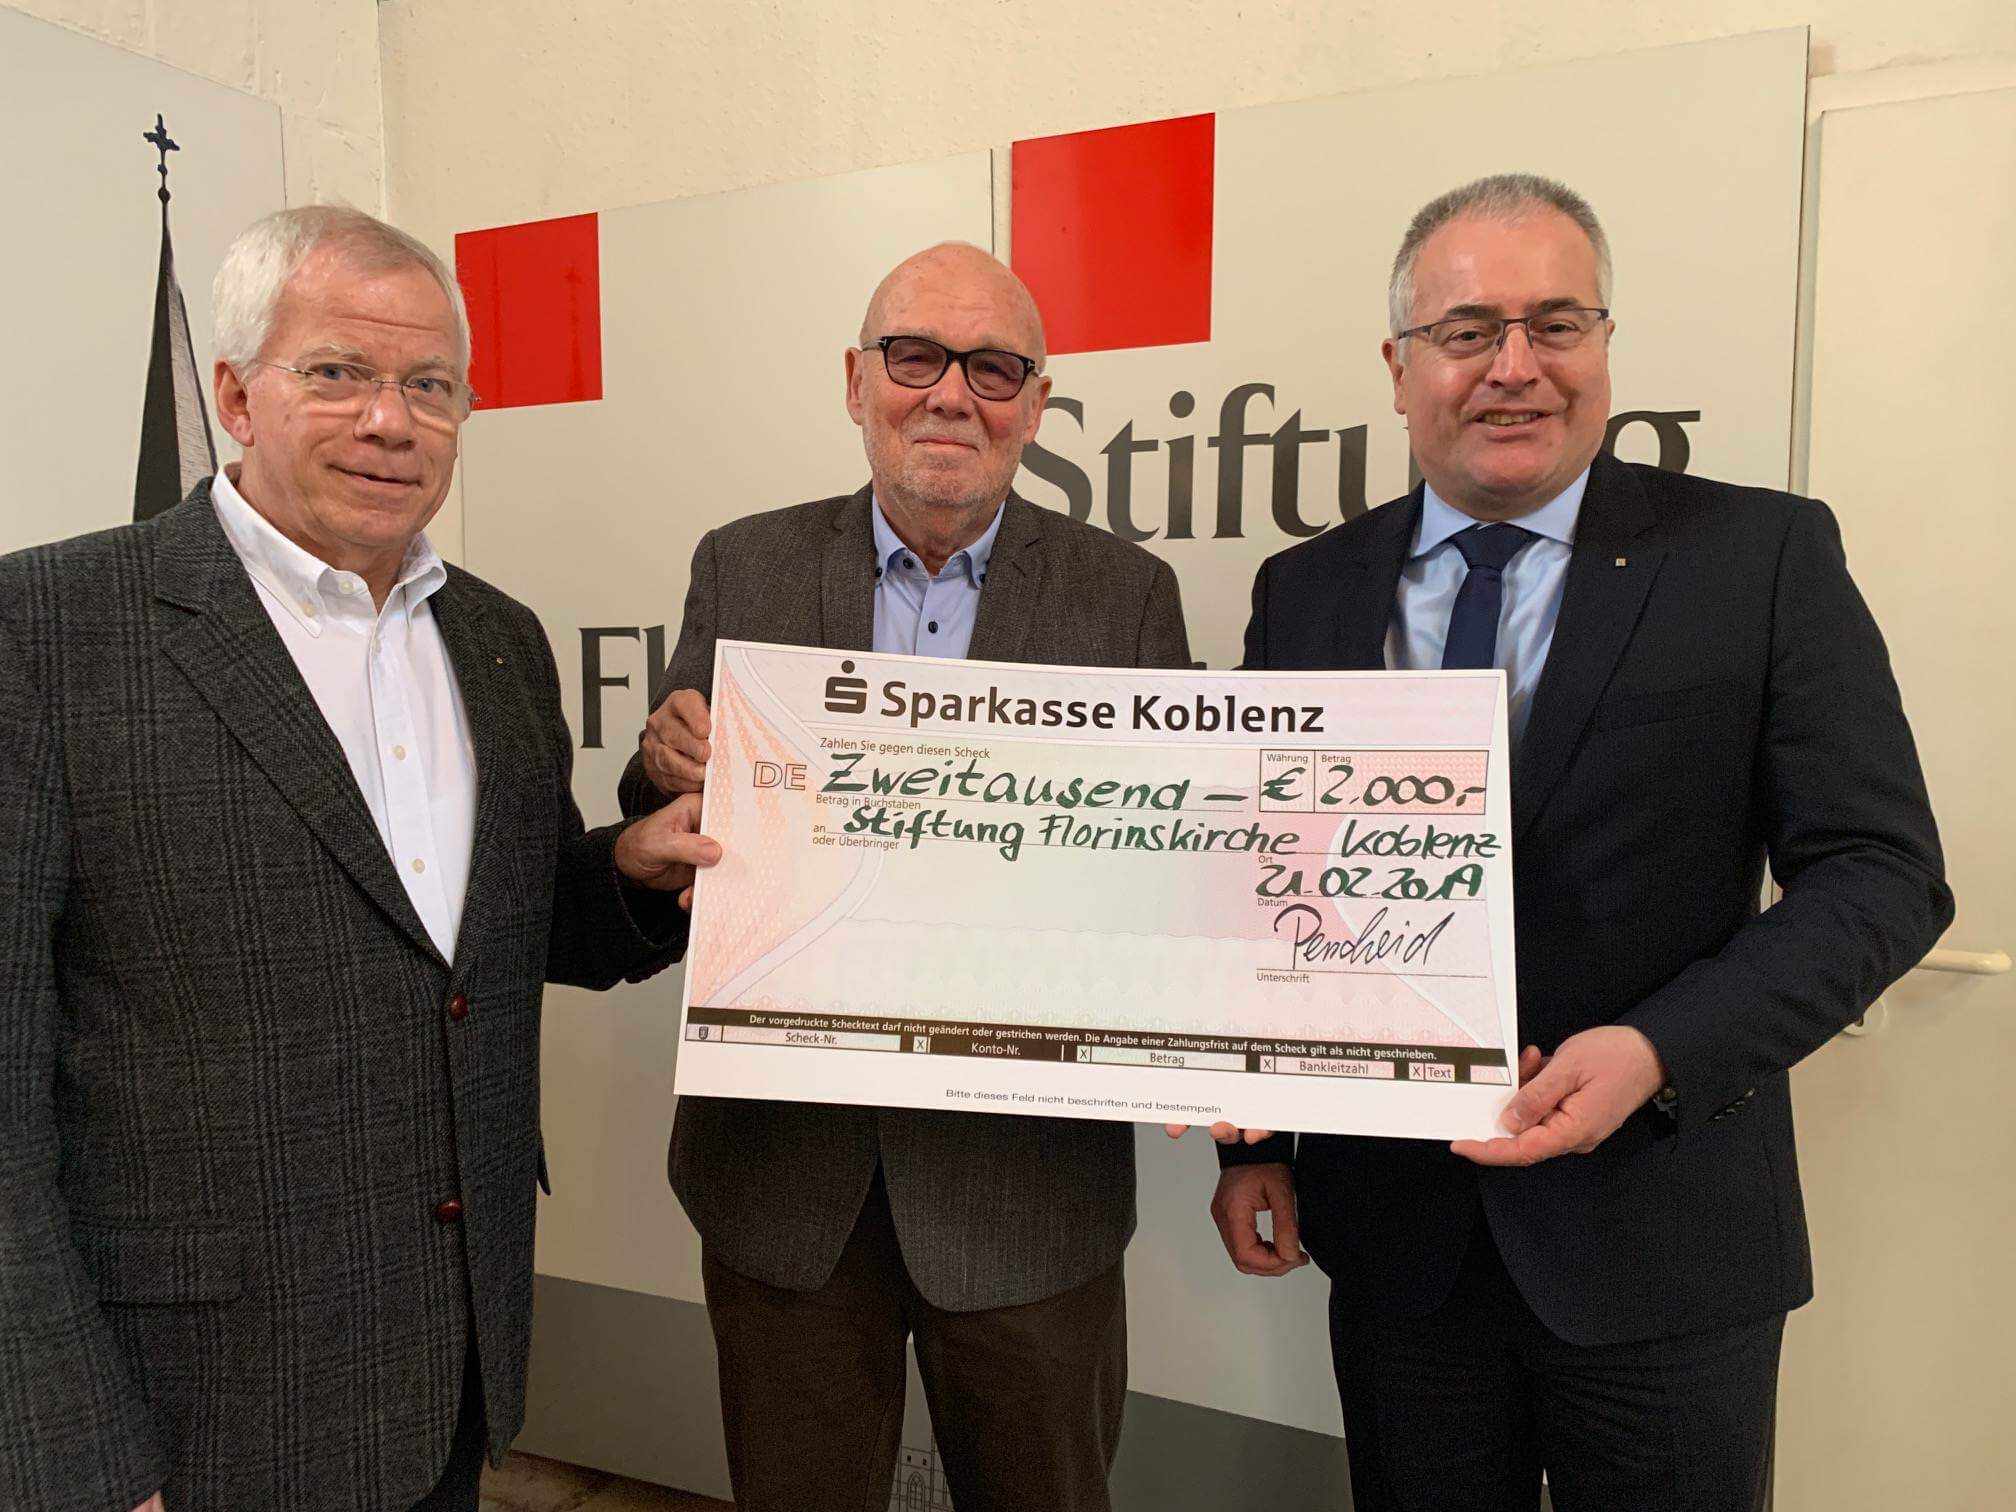 Sparkasse unterstützt Stiftung Florinskirche